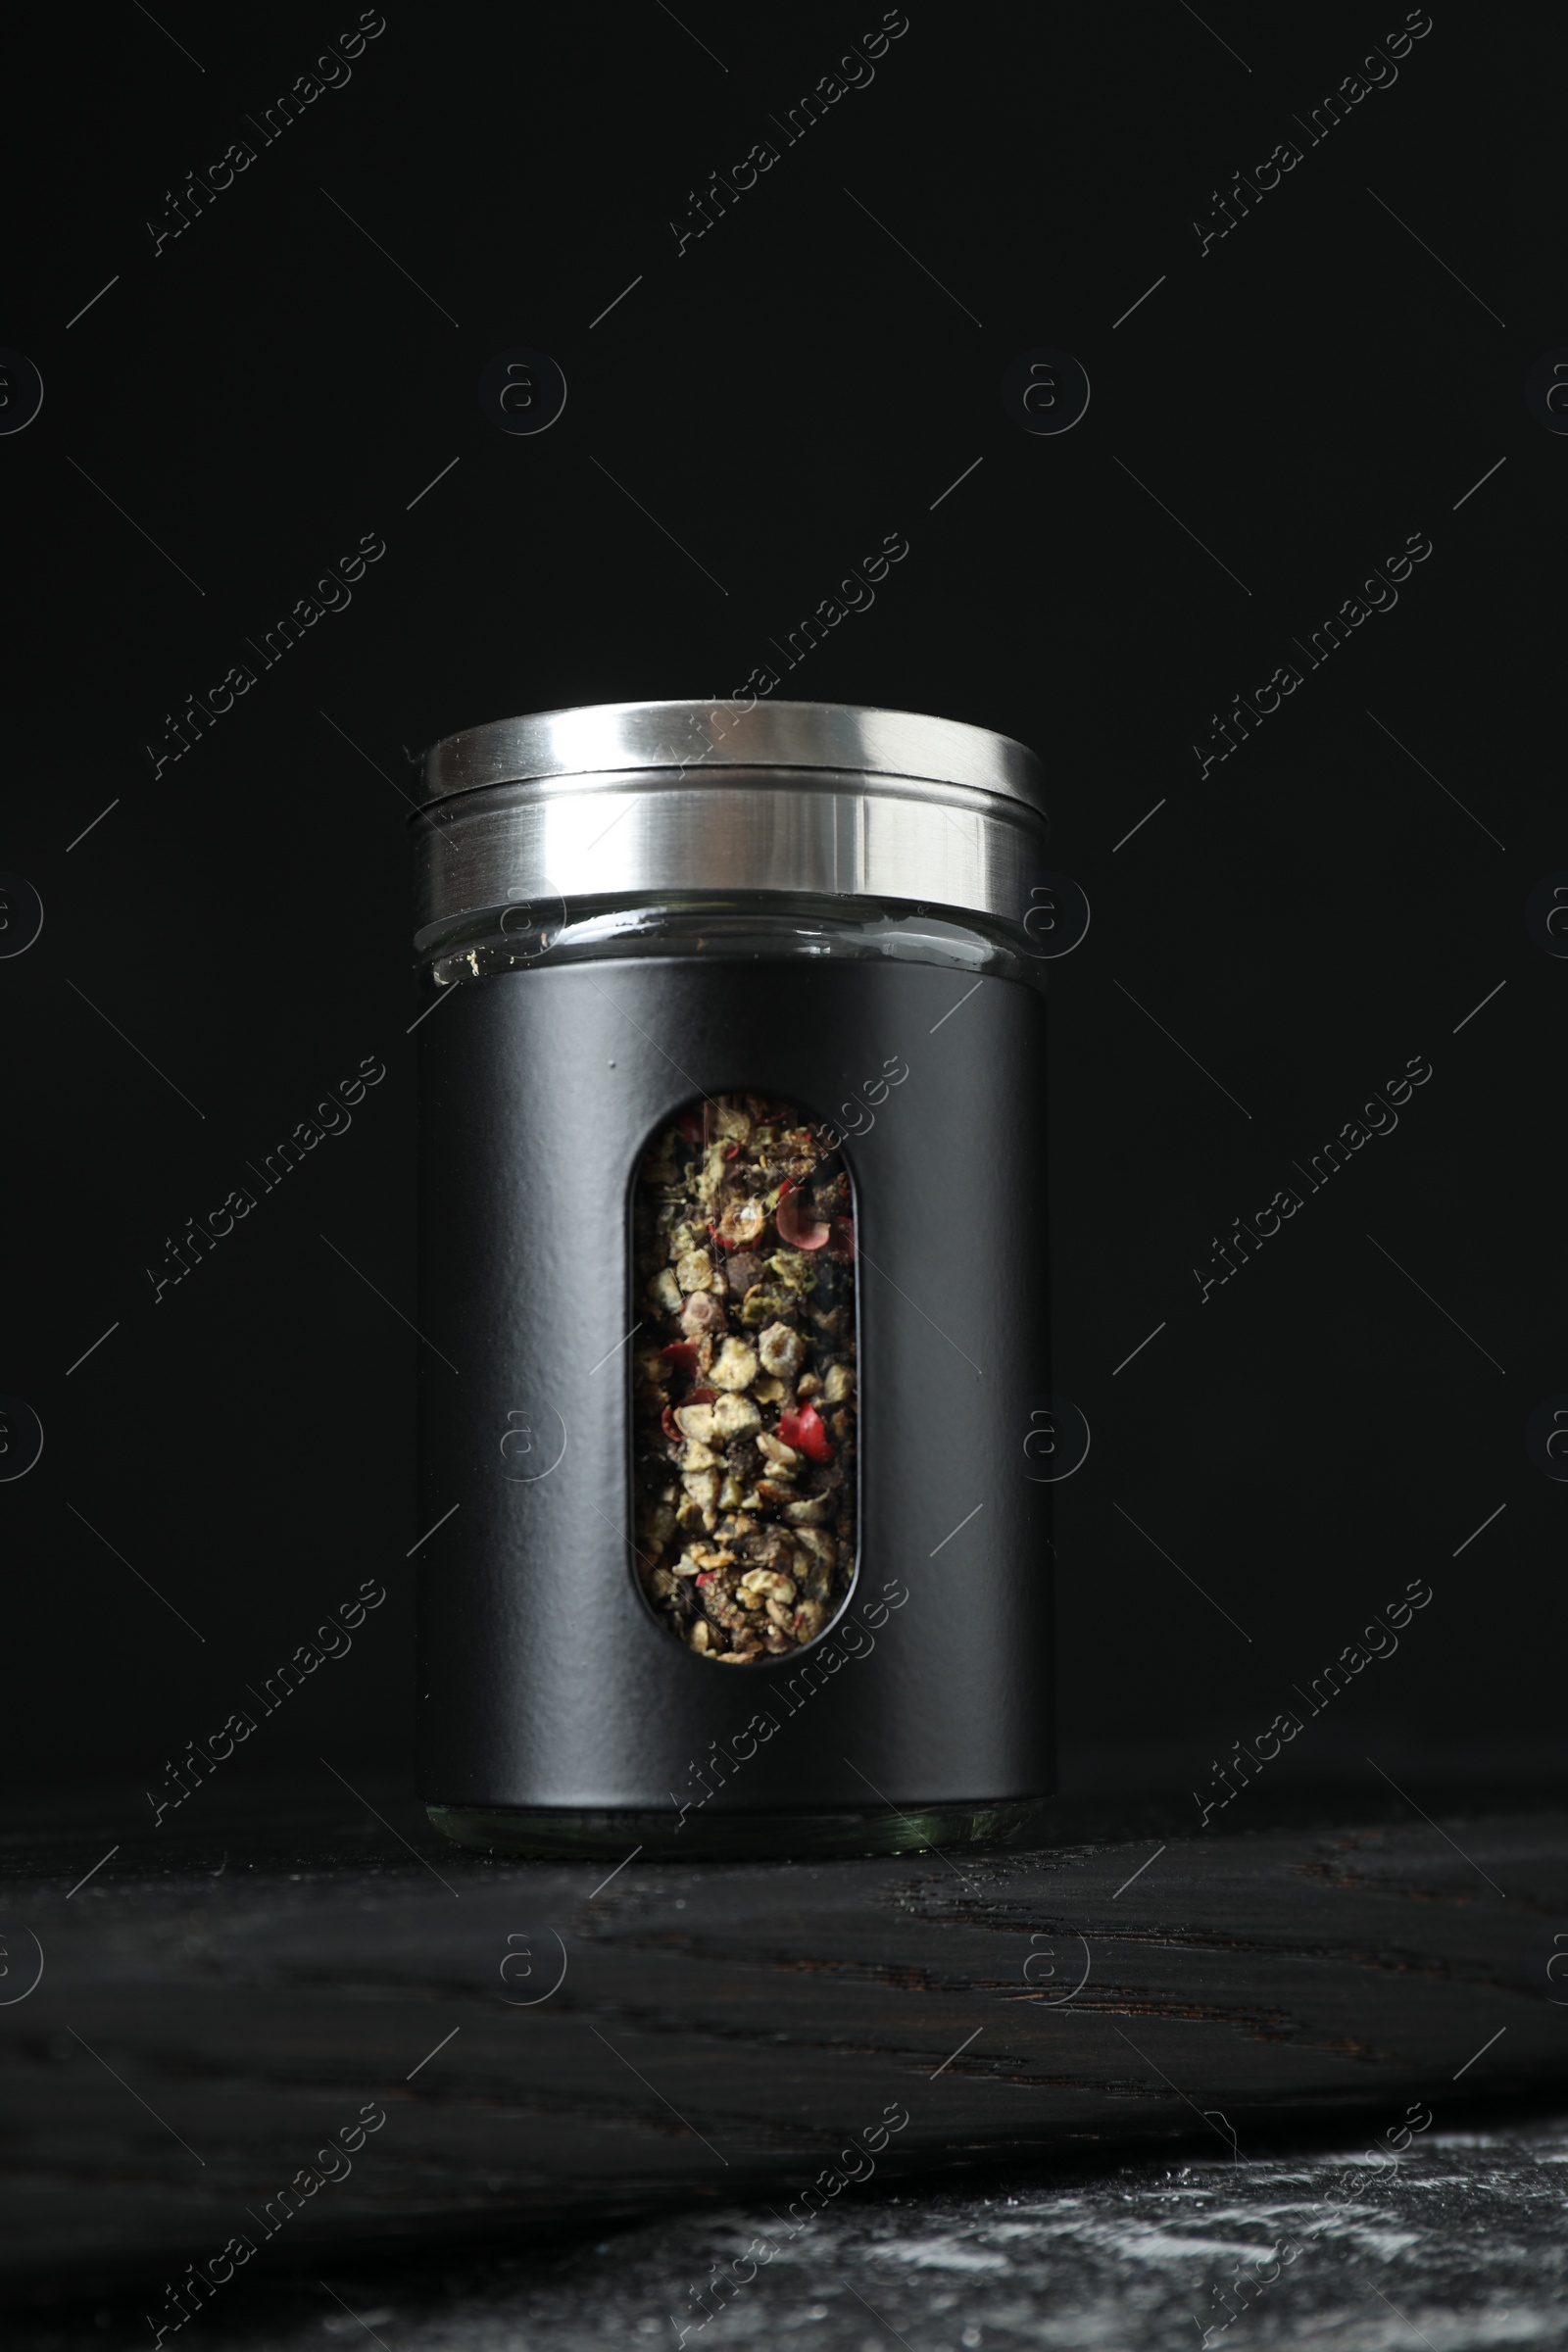 Photo of Pepper shaker on dark table against black background